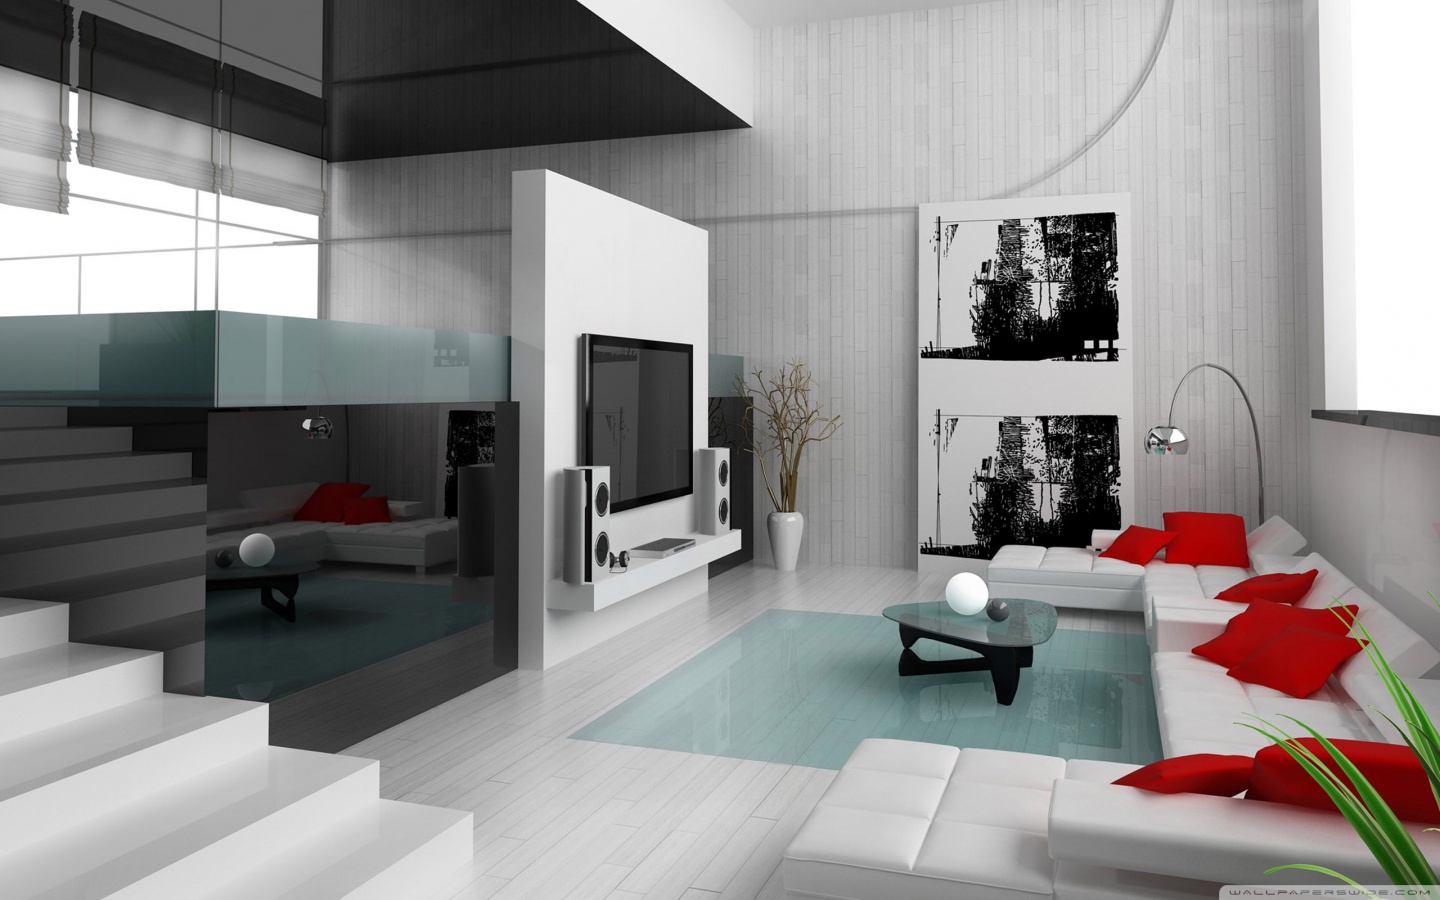  Minimalist interior design  Imagination Art Architecture